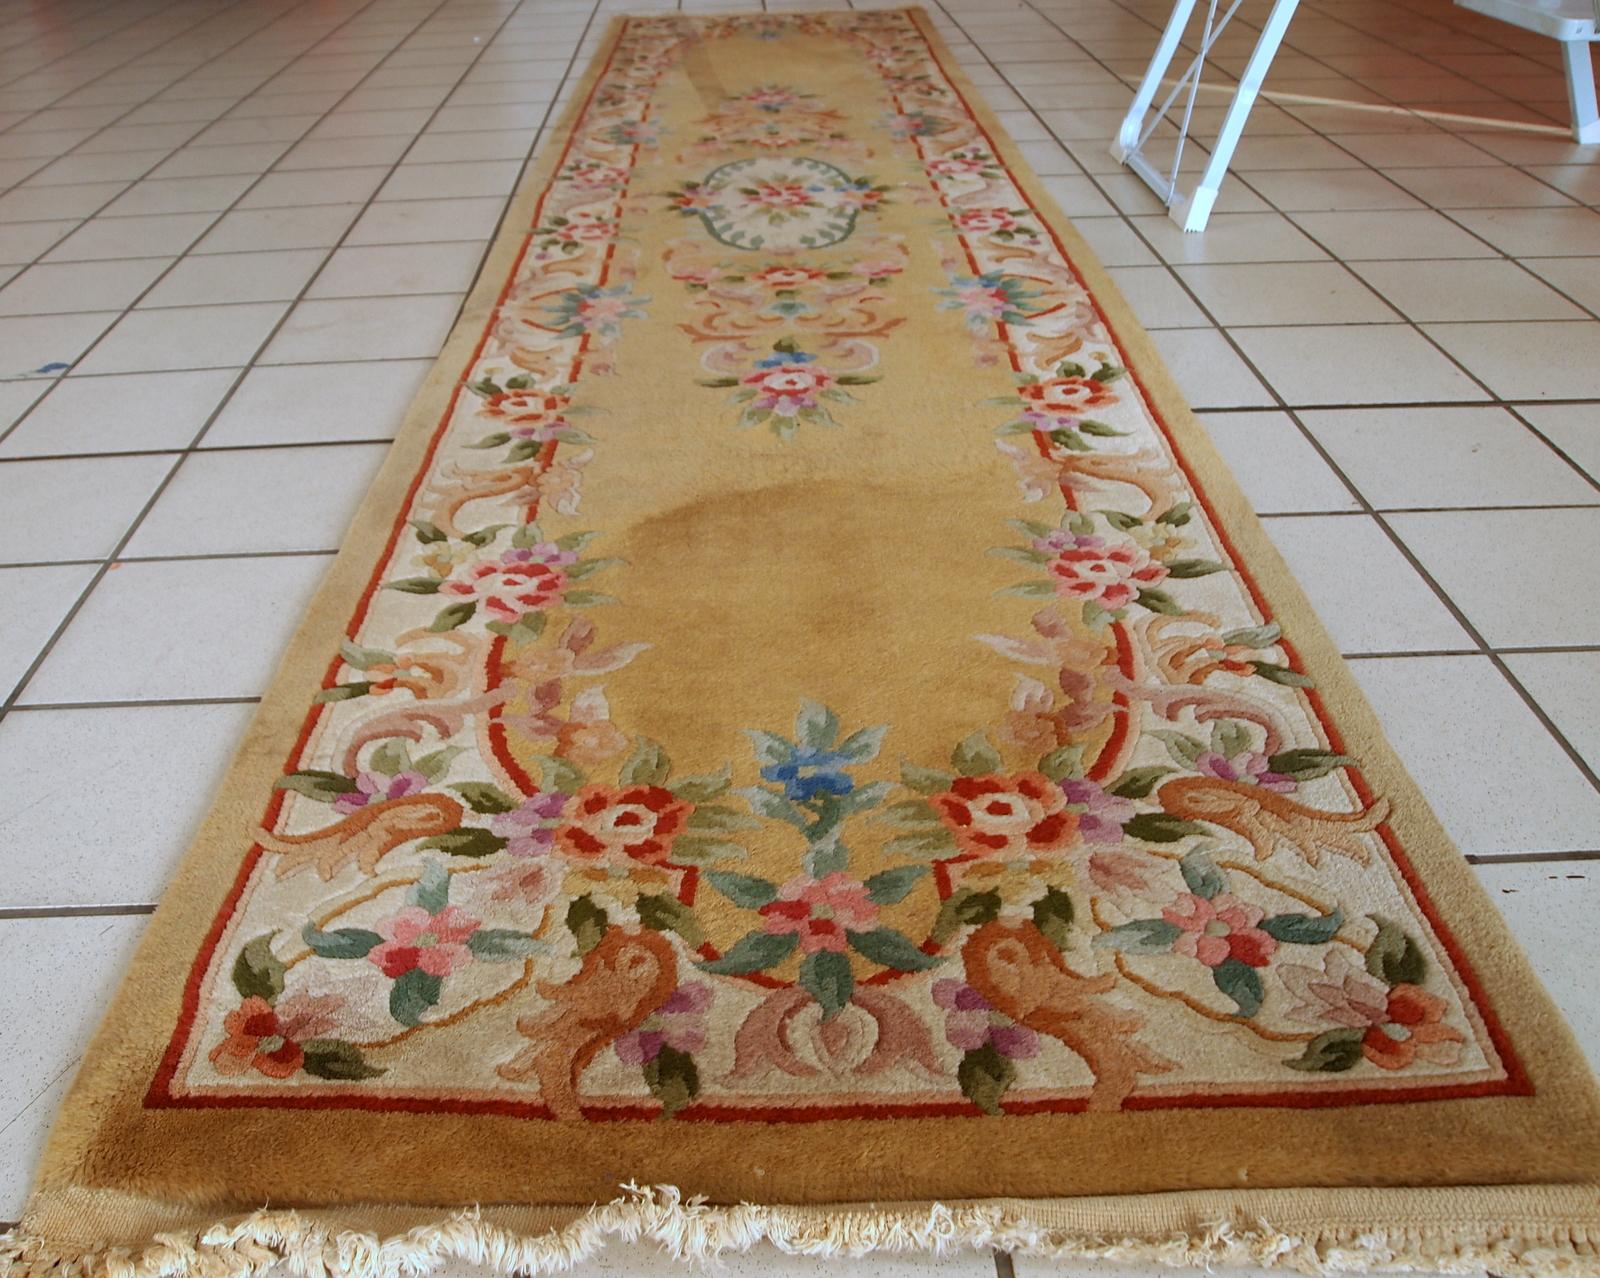 Vintage-Läufer aus China, hergestellt aus gelber Wolle. Der Teppich stammt aus dem Ende des 20. Jahrhunderts und ist in gutem Originalzustand.

- Zustand: Original gut,

- ca. 1970er Jahre,

- Größe: 2,3' x 9,9' (70 cm x 303 cm),

-